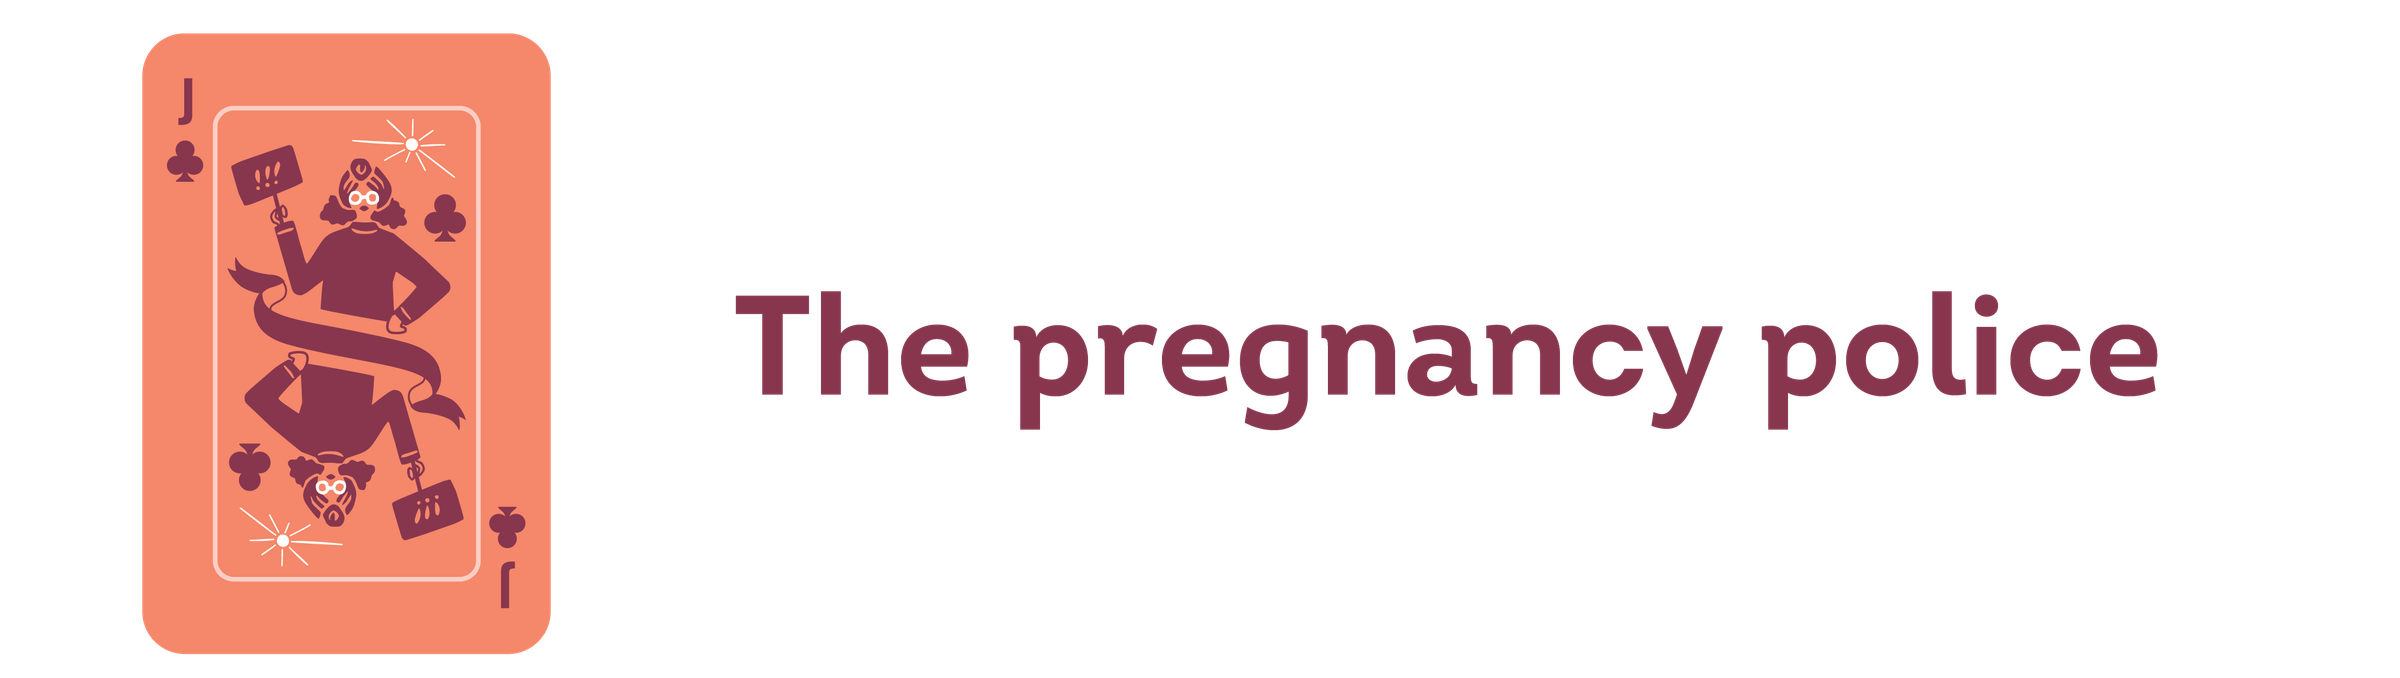 the pregnancy police